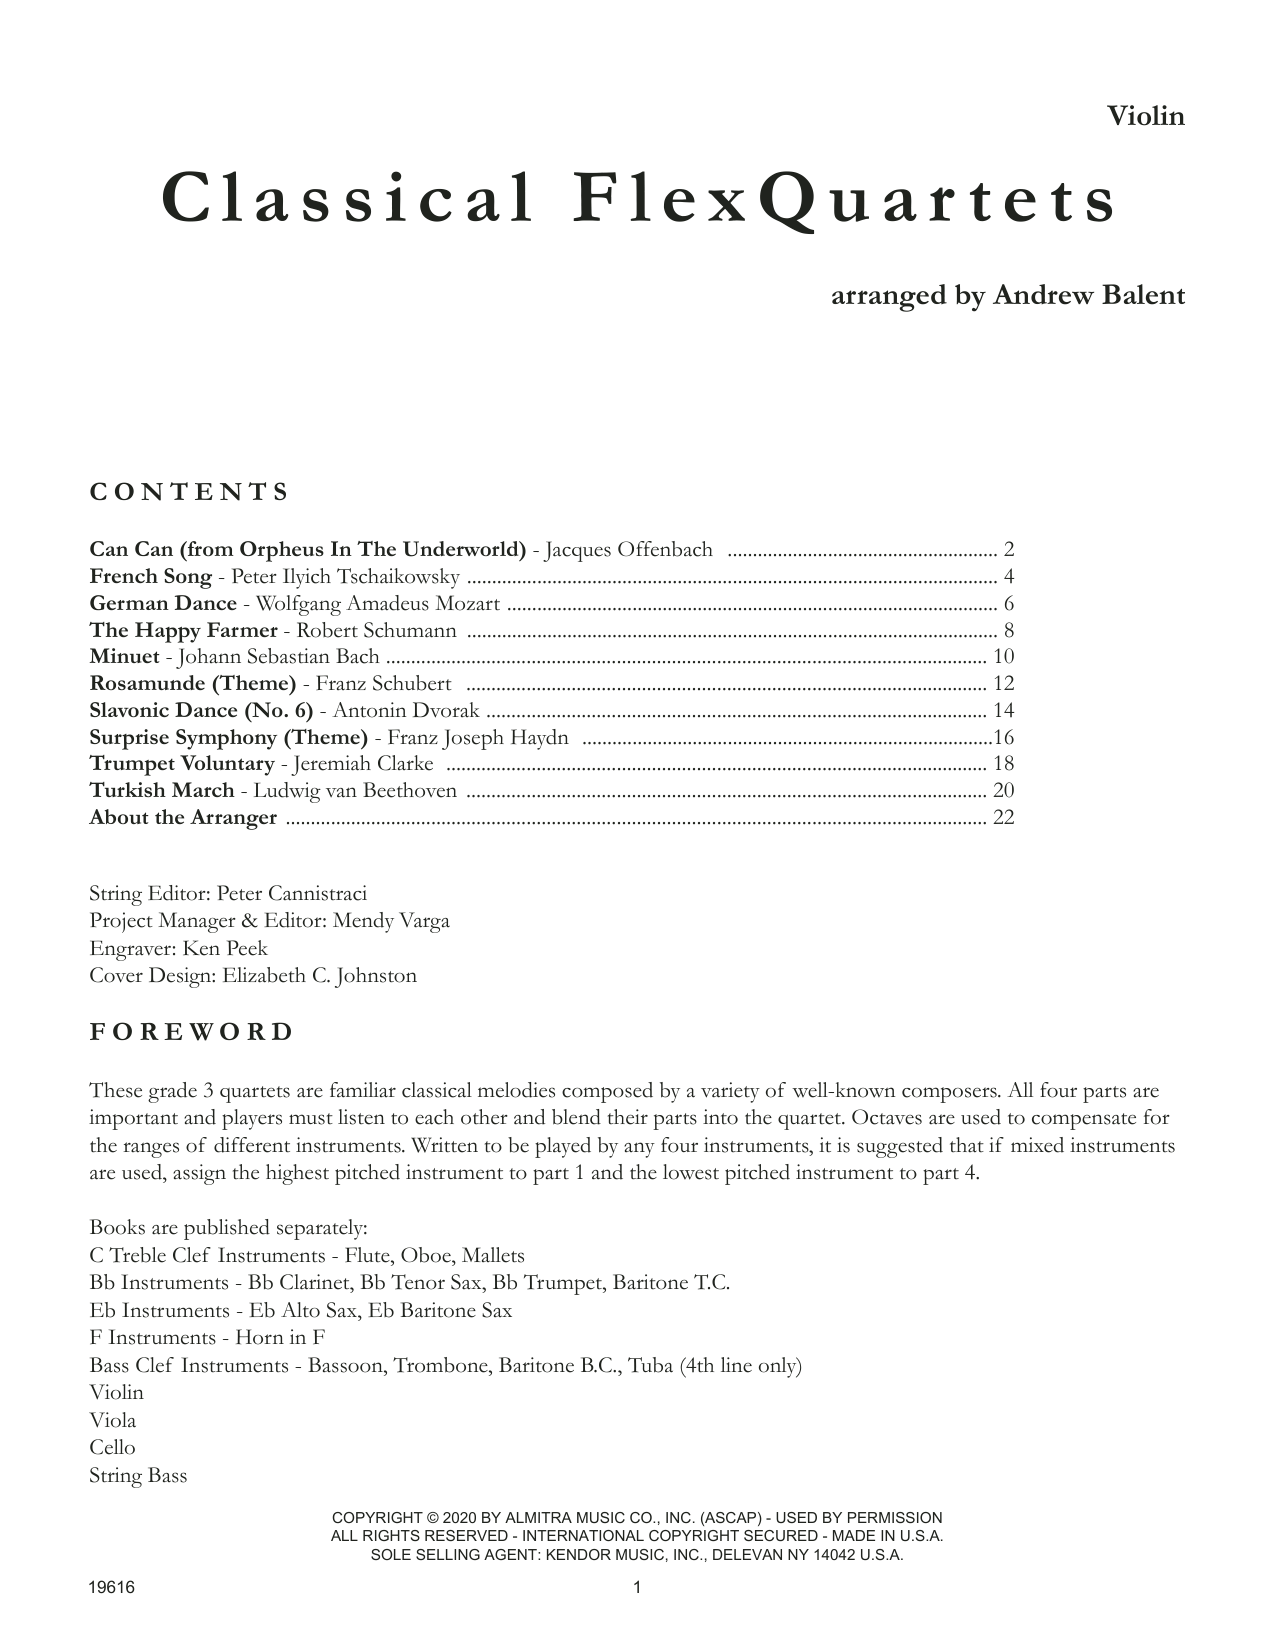 Classical Flexquartets (arr. Andrew Balent) - Violin (String Ensemble) von Various